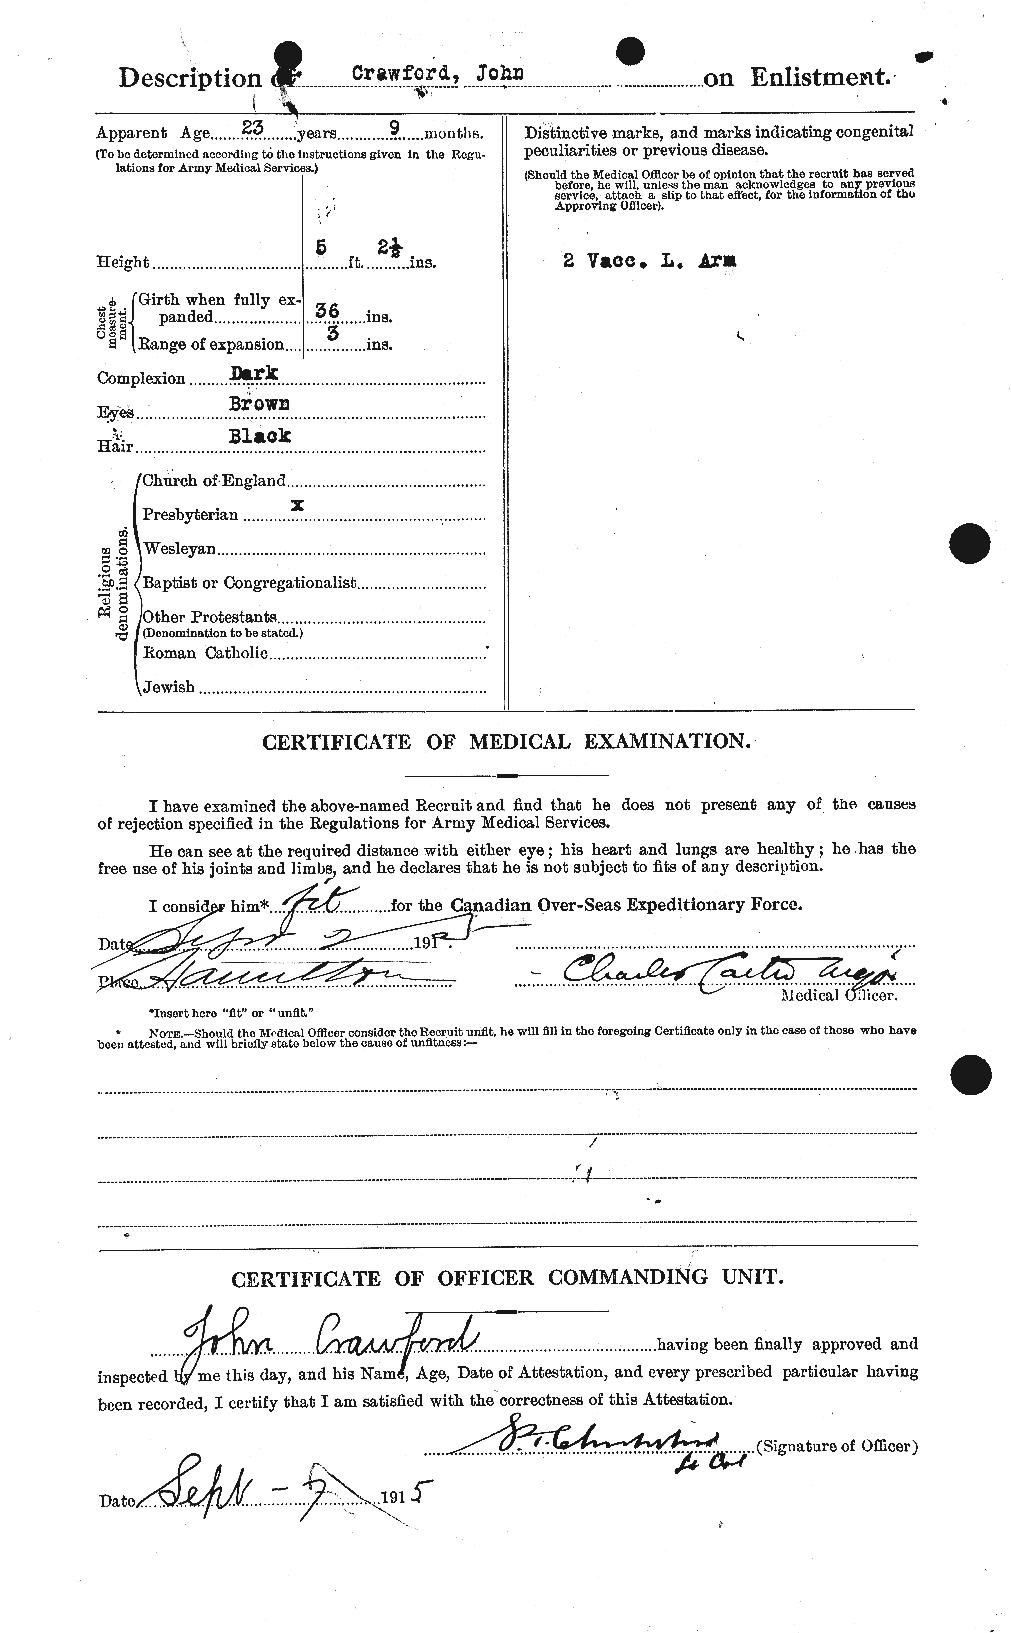 Dossiers du Personnel de la Première Guerre mondiale - CEC 062450b